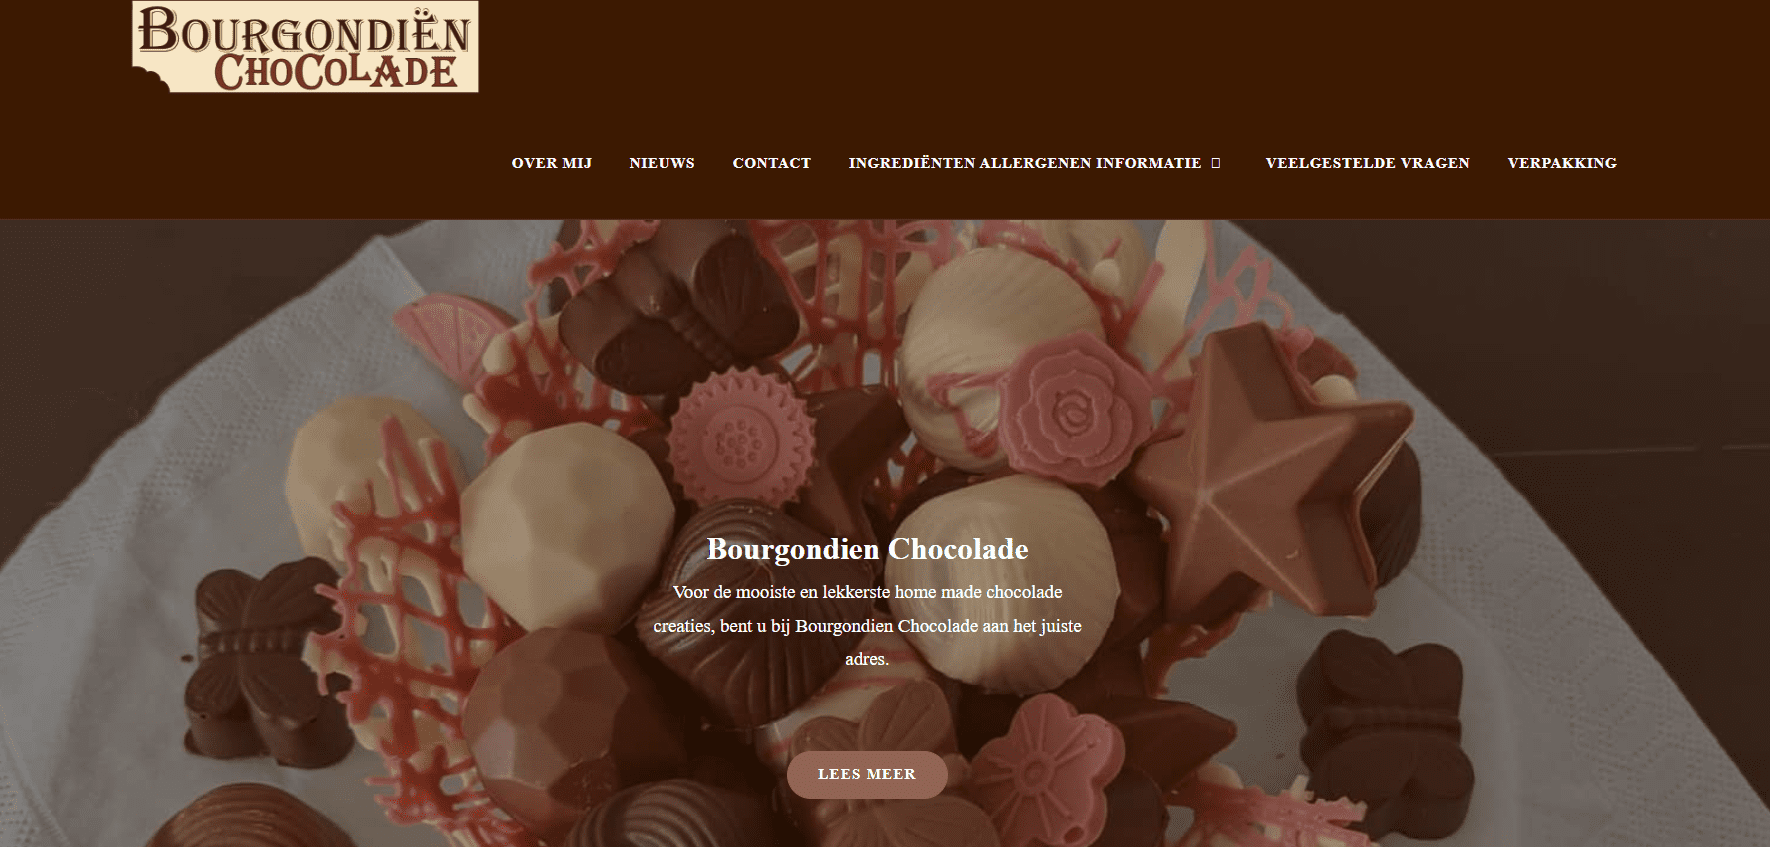 Bourgondien Chocolade